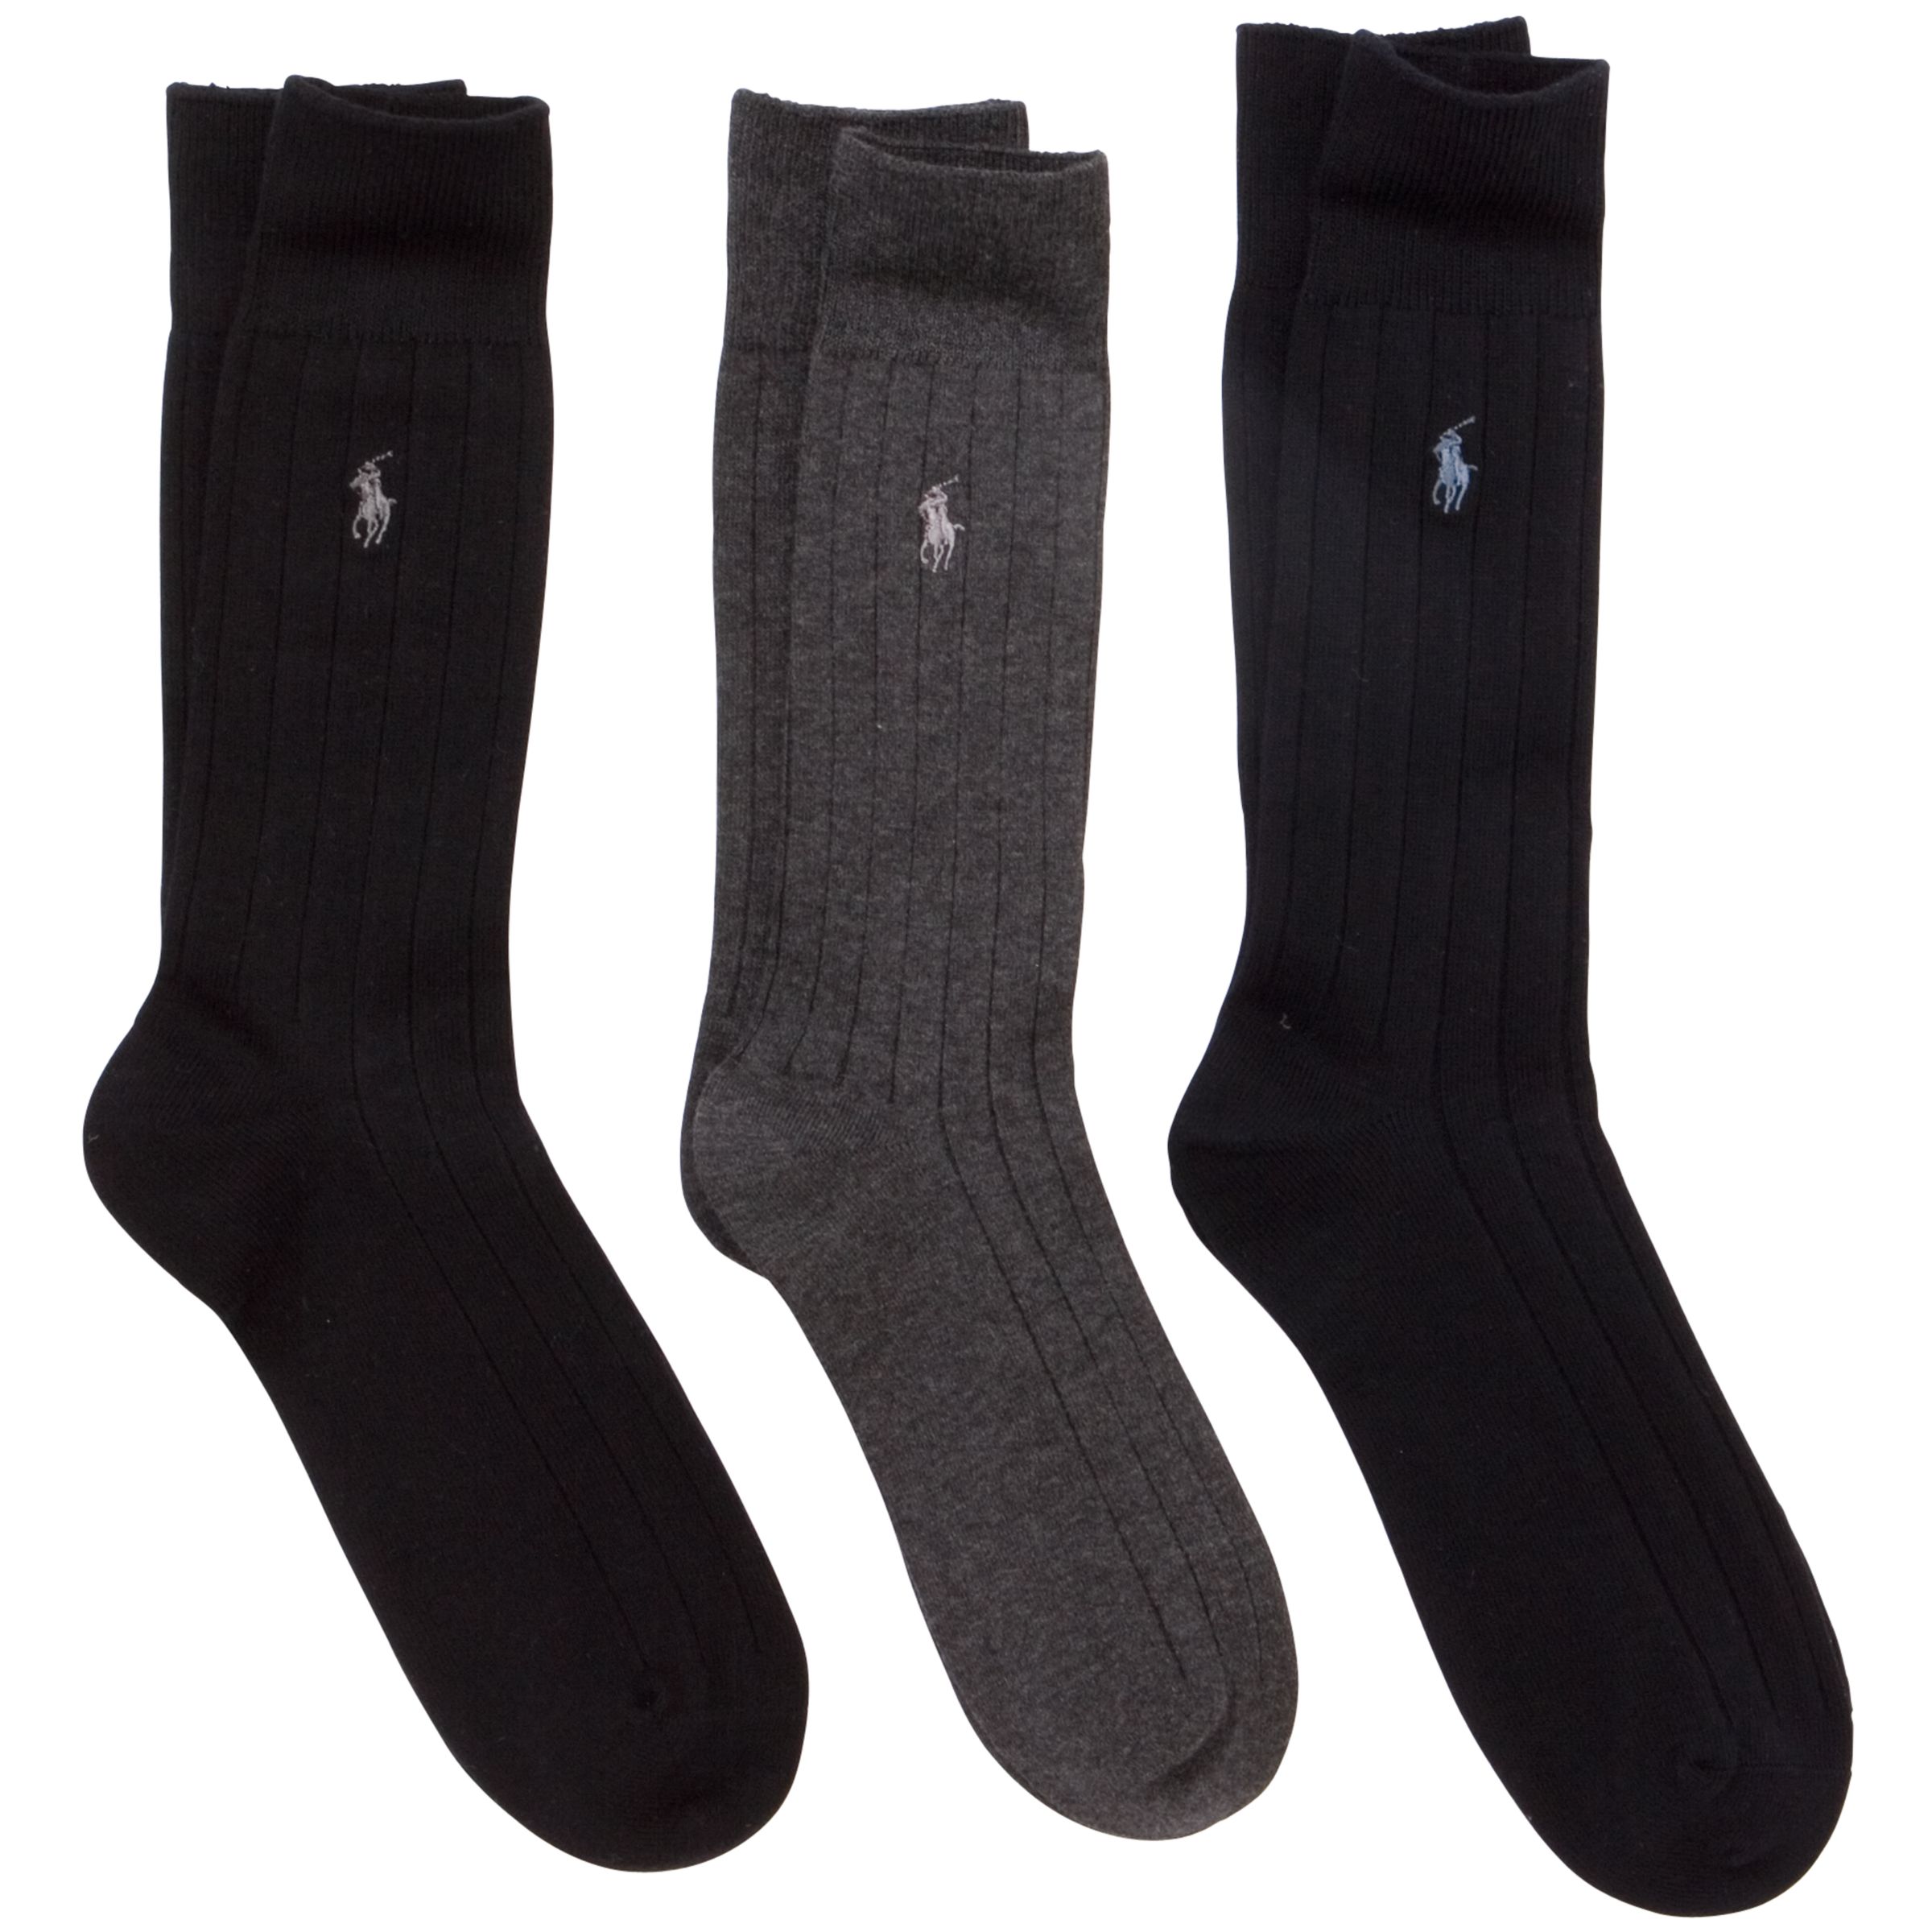 Polo Ralph Lauren Dress Socks, Pack of 3, One Size, Multi